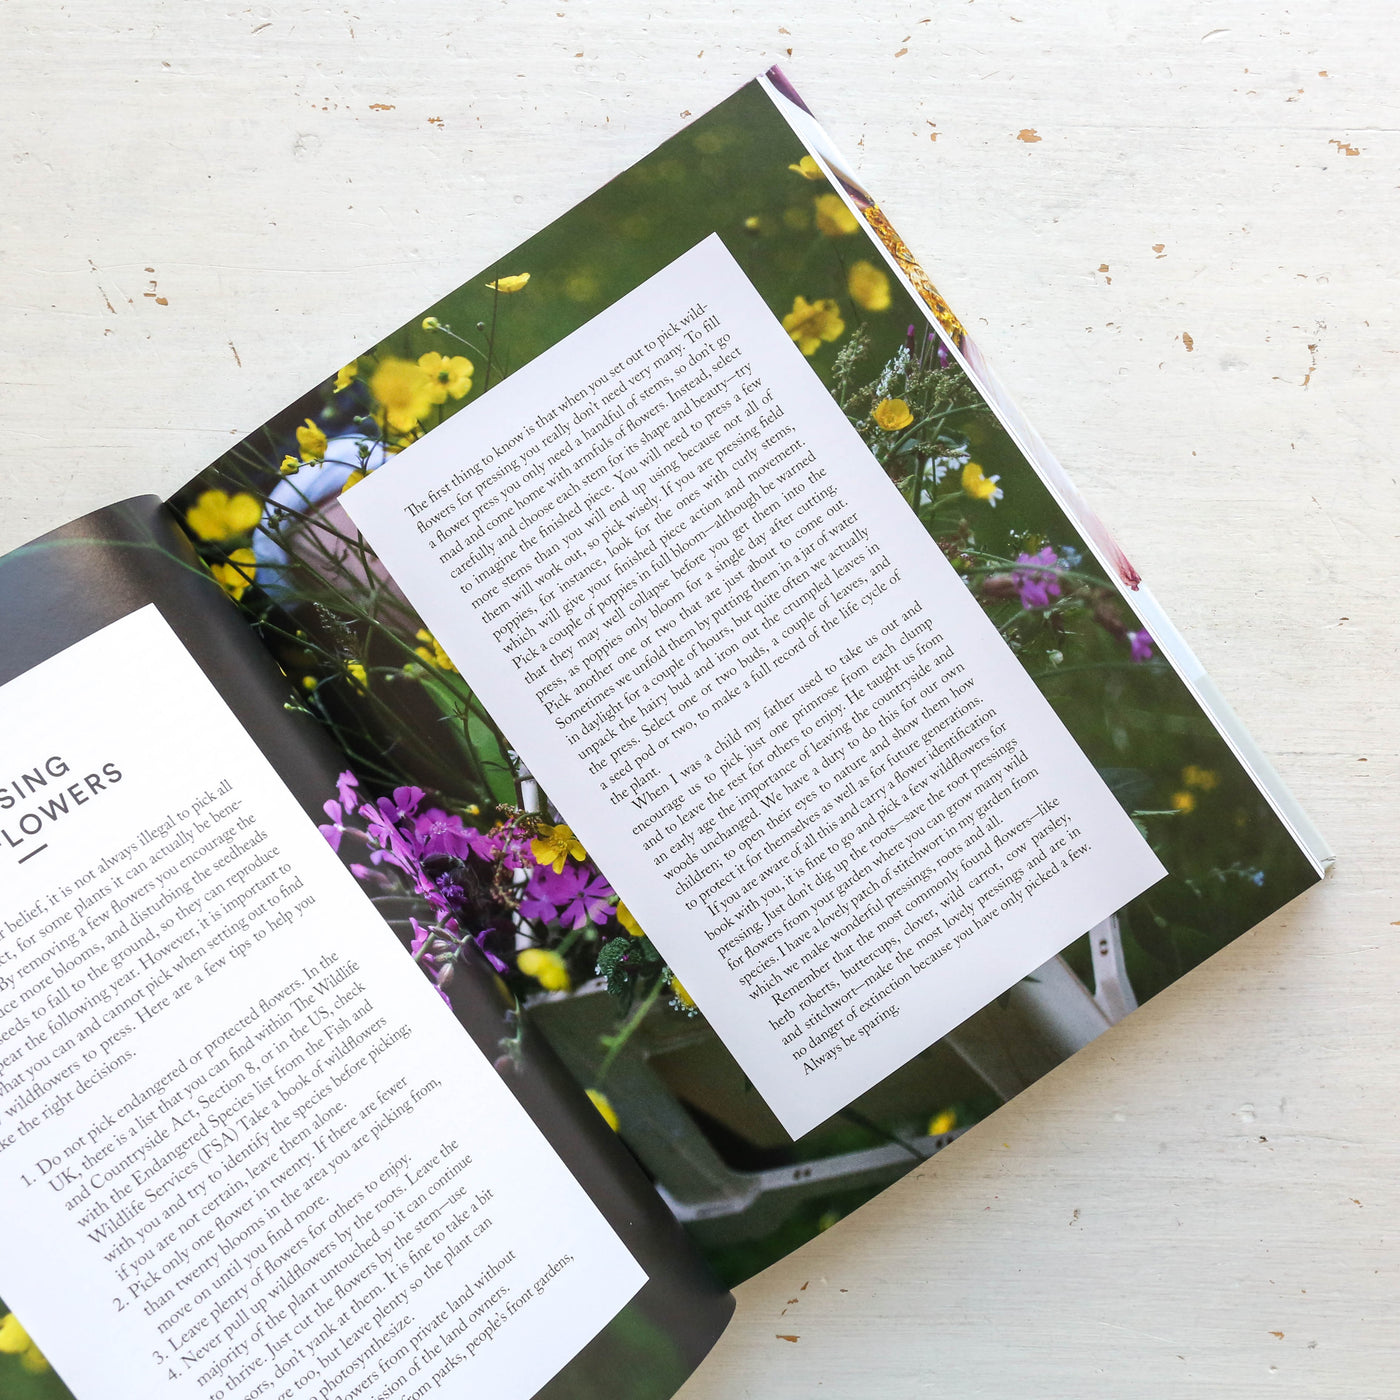 The Modern Flower Press Book